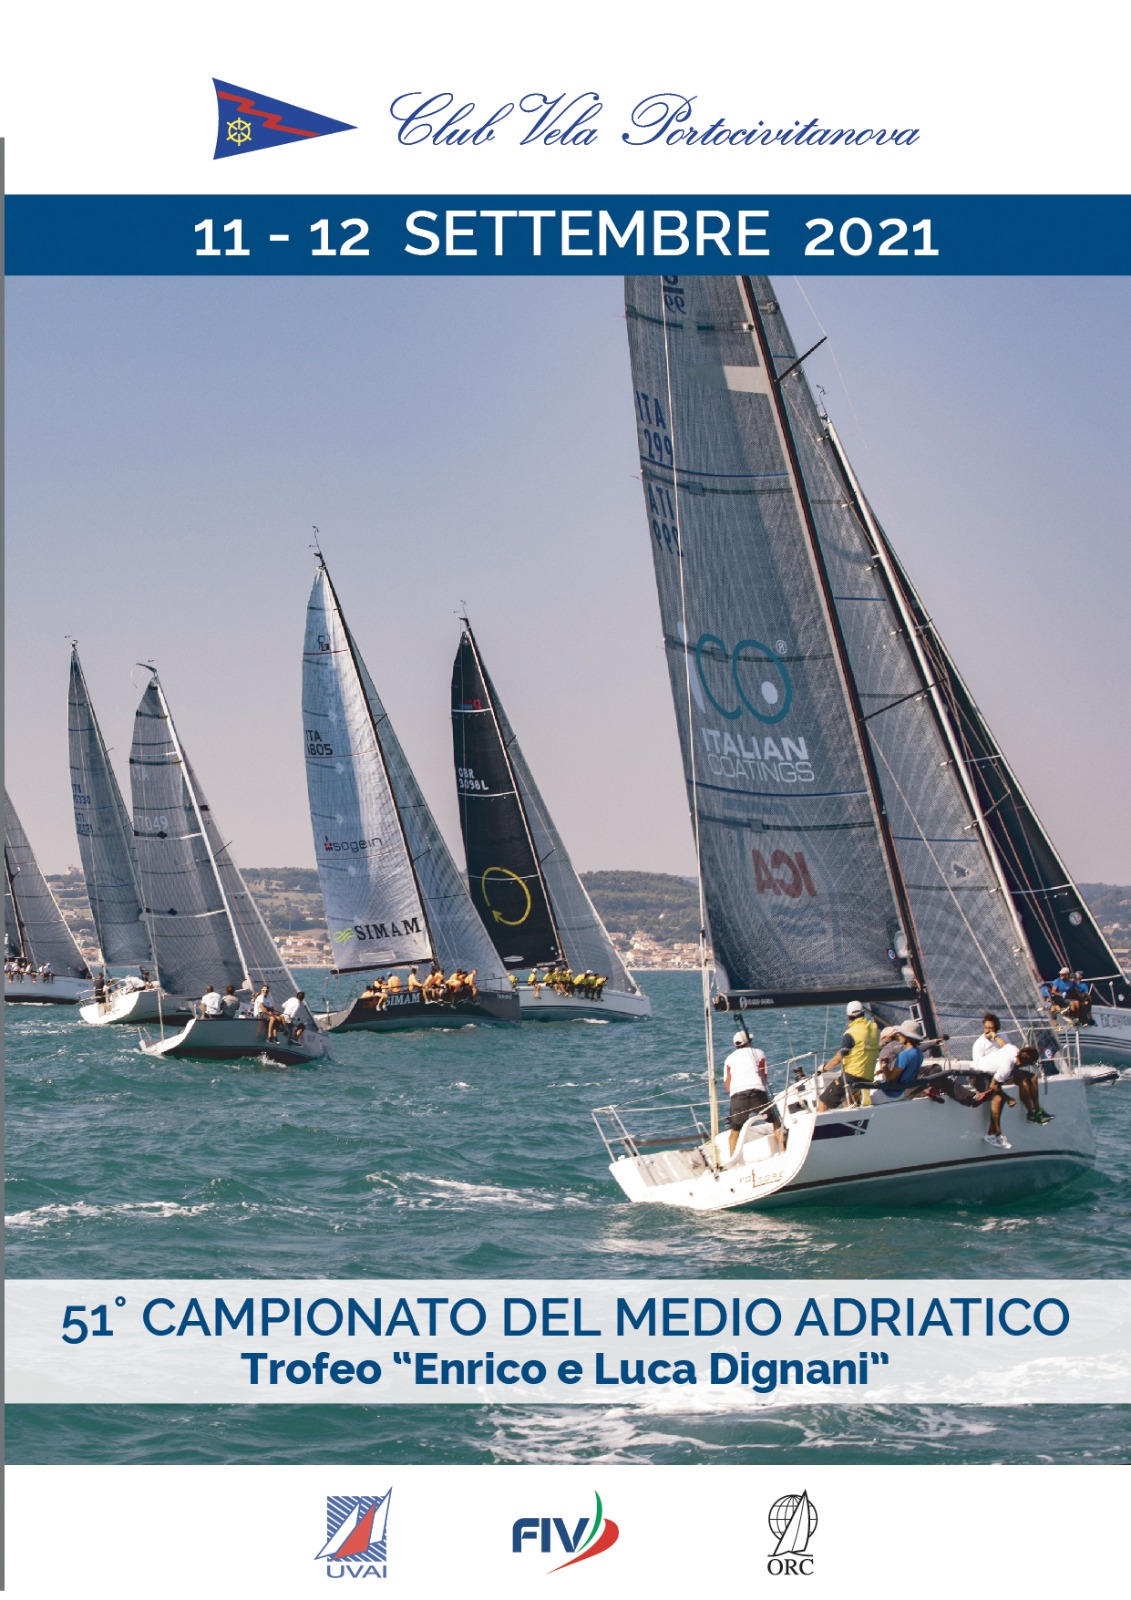 11 / 12 settembre 2021 – CAMPIONATO DEL MEDIO ADRIATICO “Trofeo Enrico e Luca Dignani” (valida Palo d’Oro 2021)